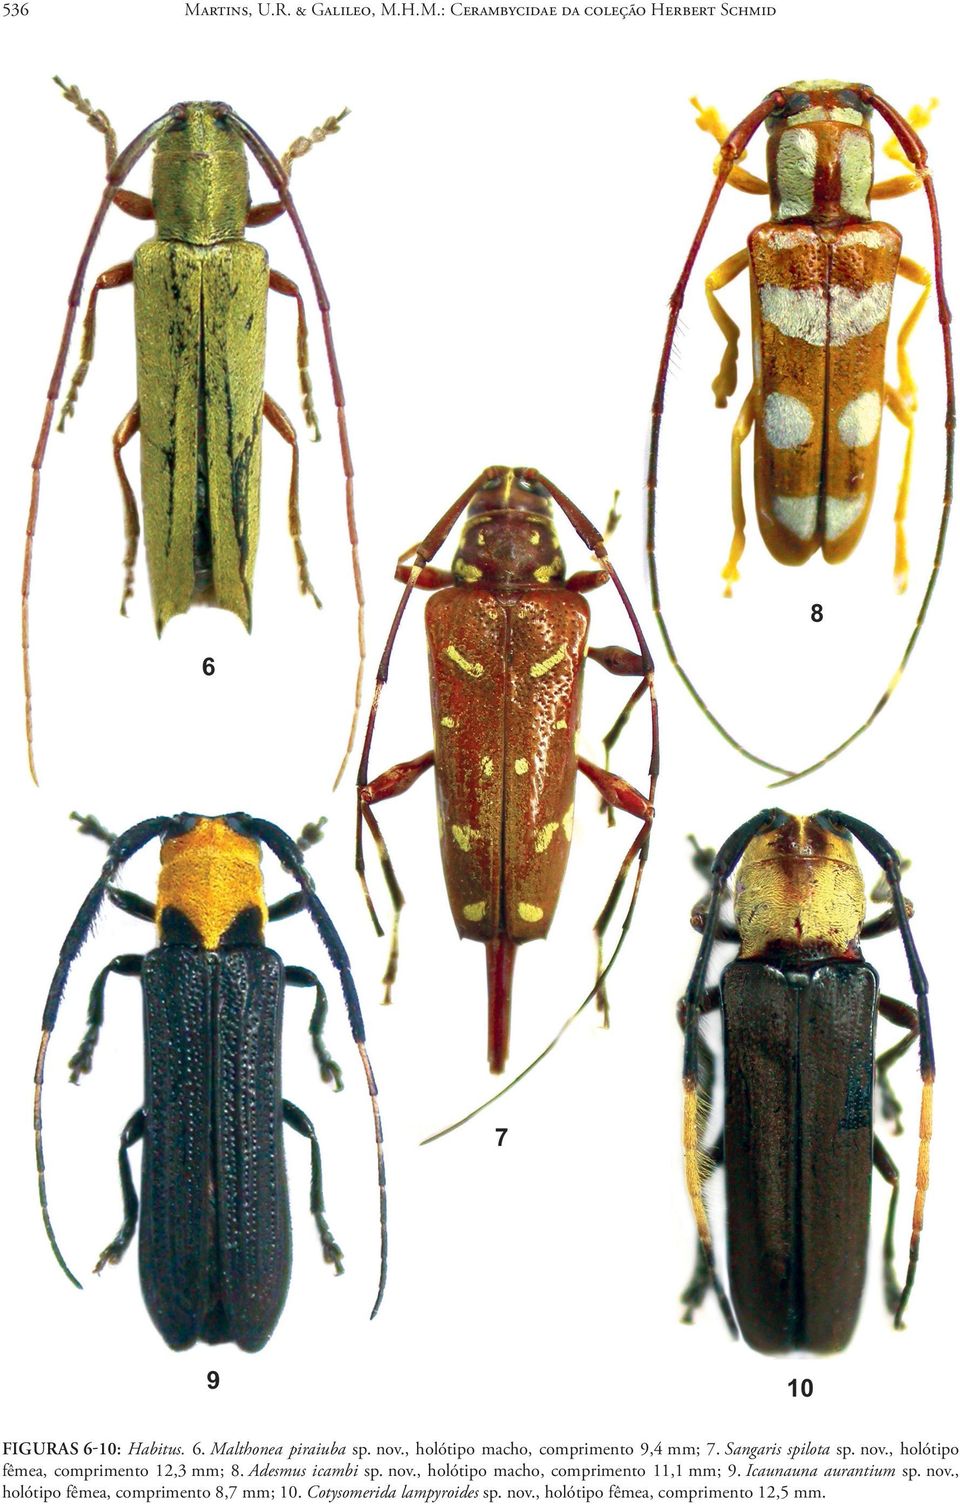 Adesmus icambi sp. nov., holótipo macho, comprimento 11,1 mm; 9. Icaunauna aurantium sp. nov., holótipo fêmea, comprimento 8,7 mm; 10.